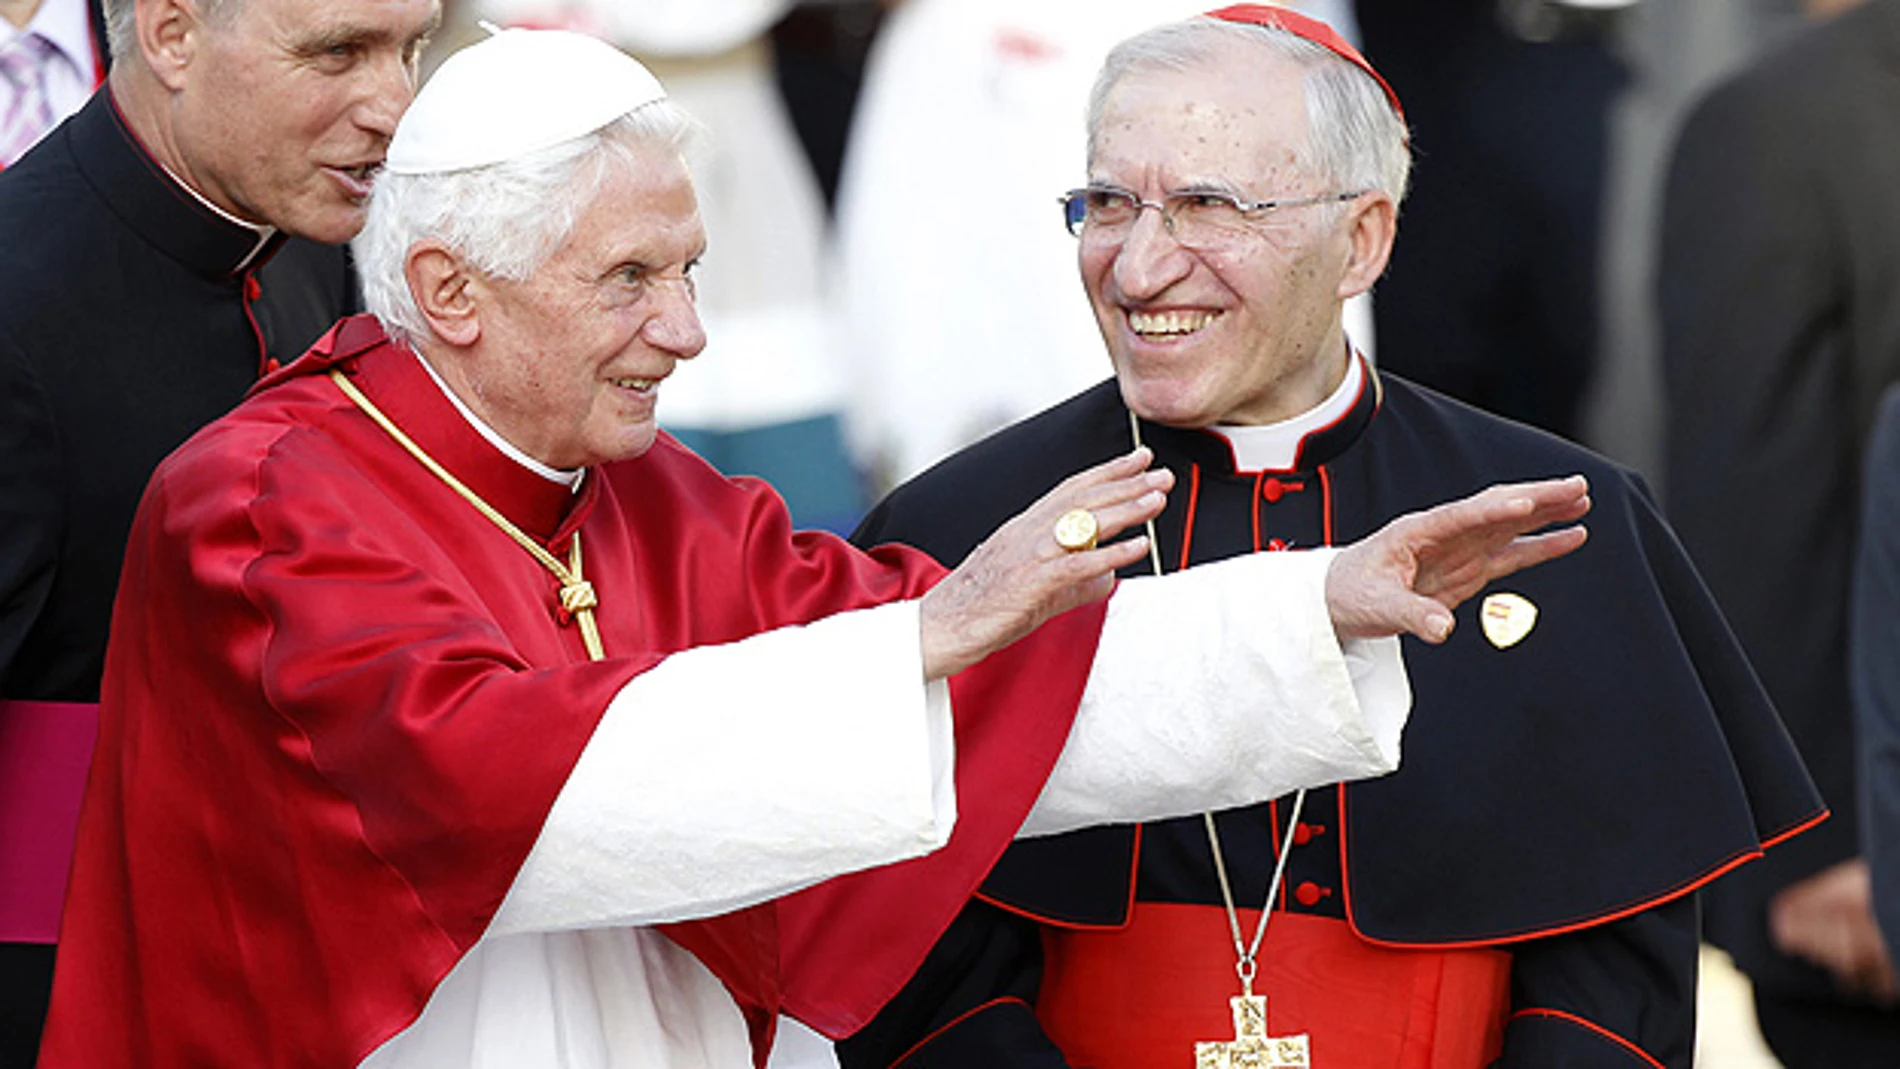 Benedicto XVI con Rouco Varela